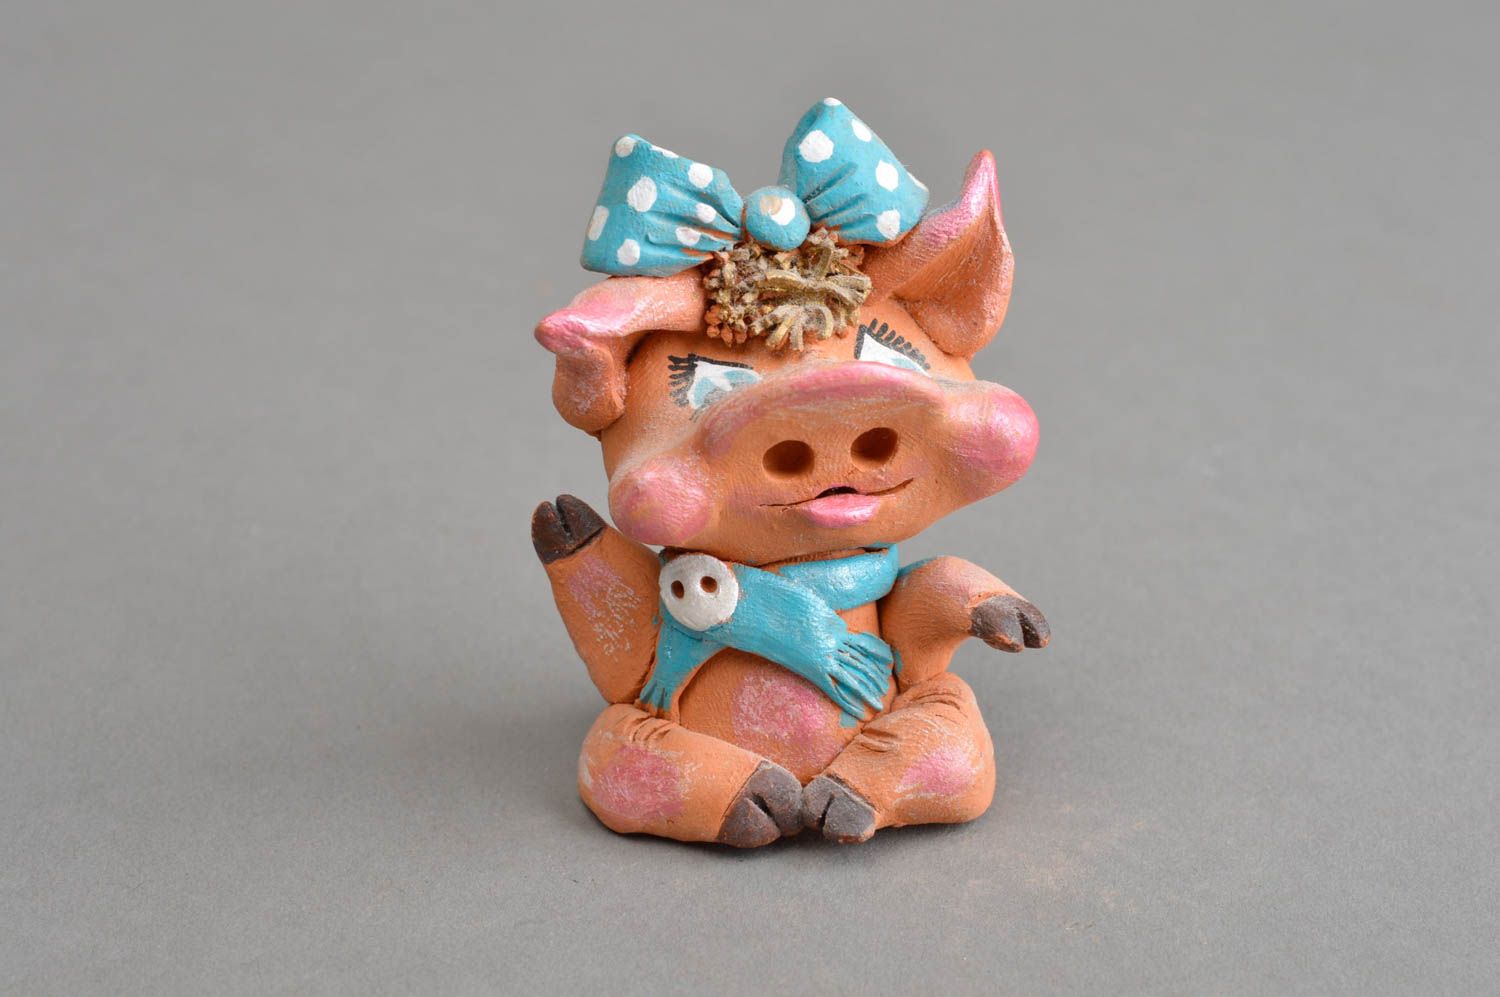 Авторский керамический сувенир ручной работы радостная свинка с голубым бантом фото 2